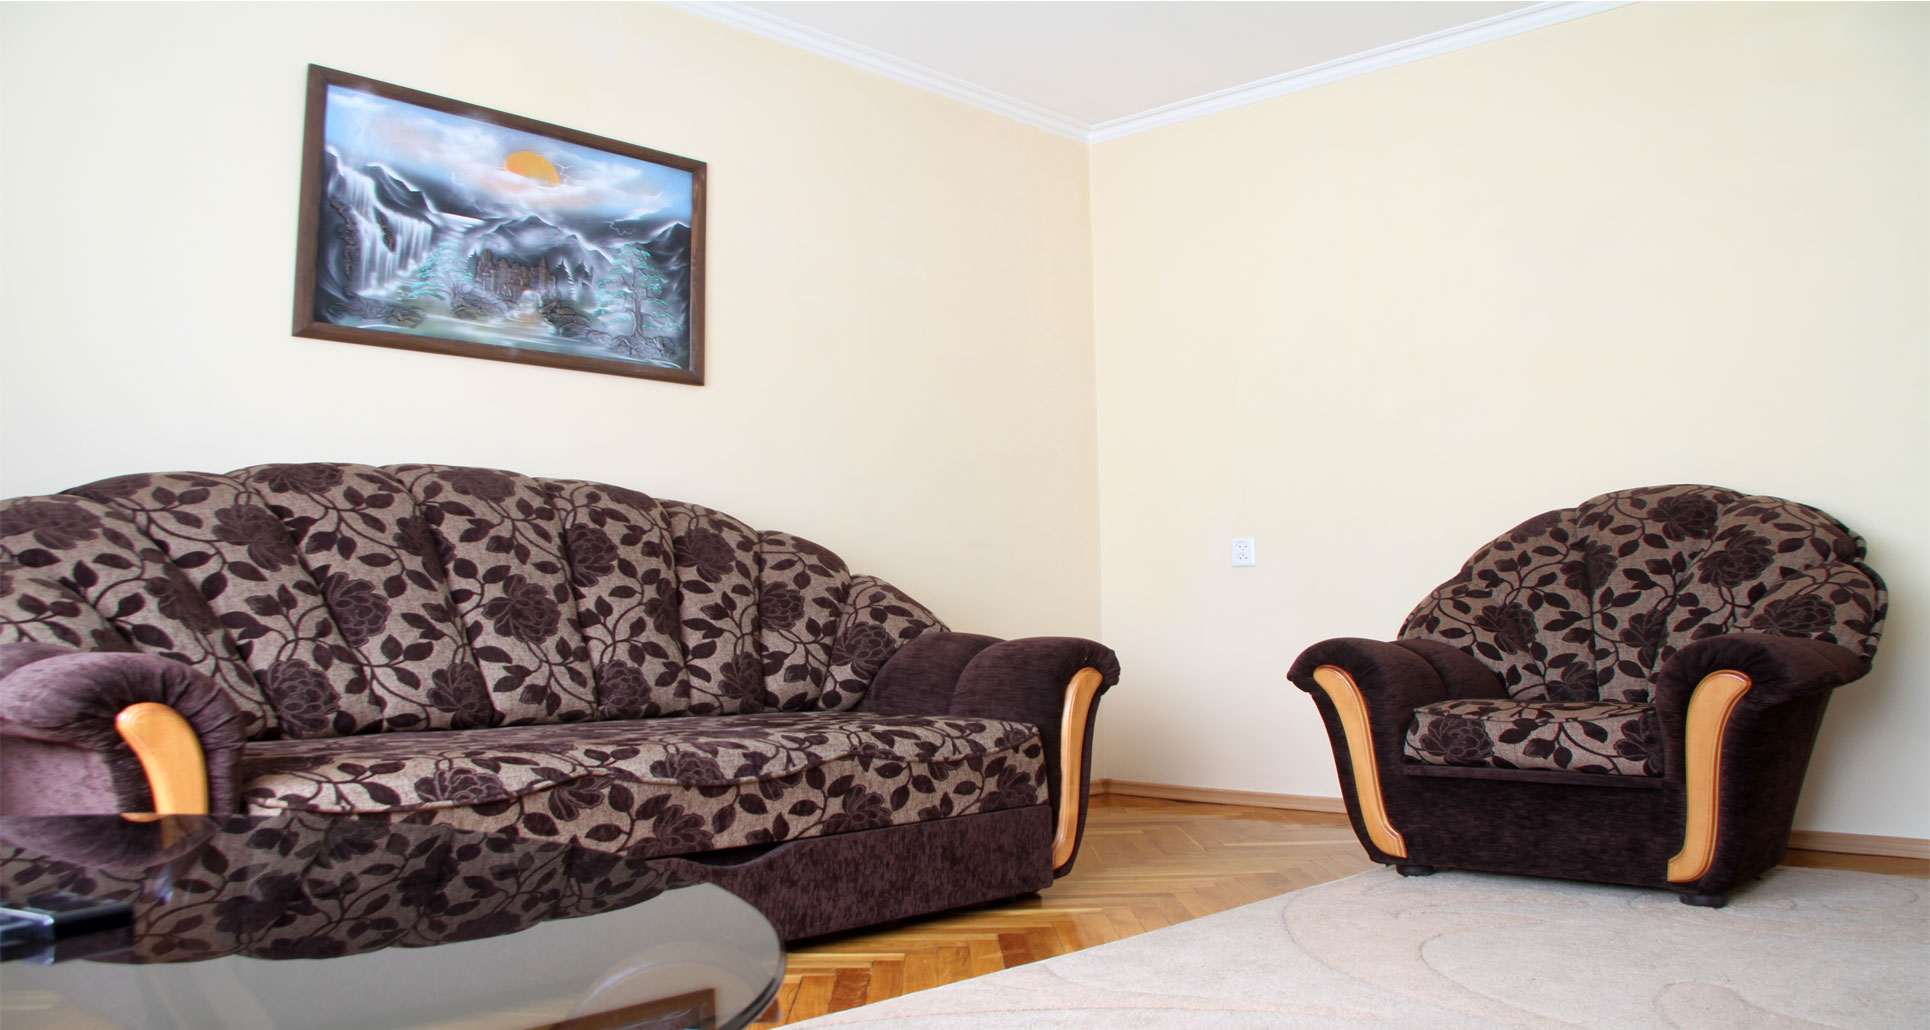 Grand Central Apartment это квартира в аренду в Кишиневе имеющая 4 комнаты в аренду в Кишиневе - Chisinau, Moldova